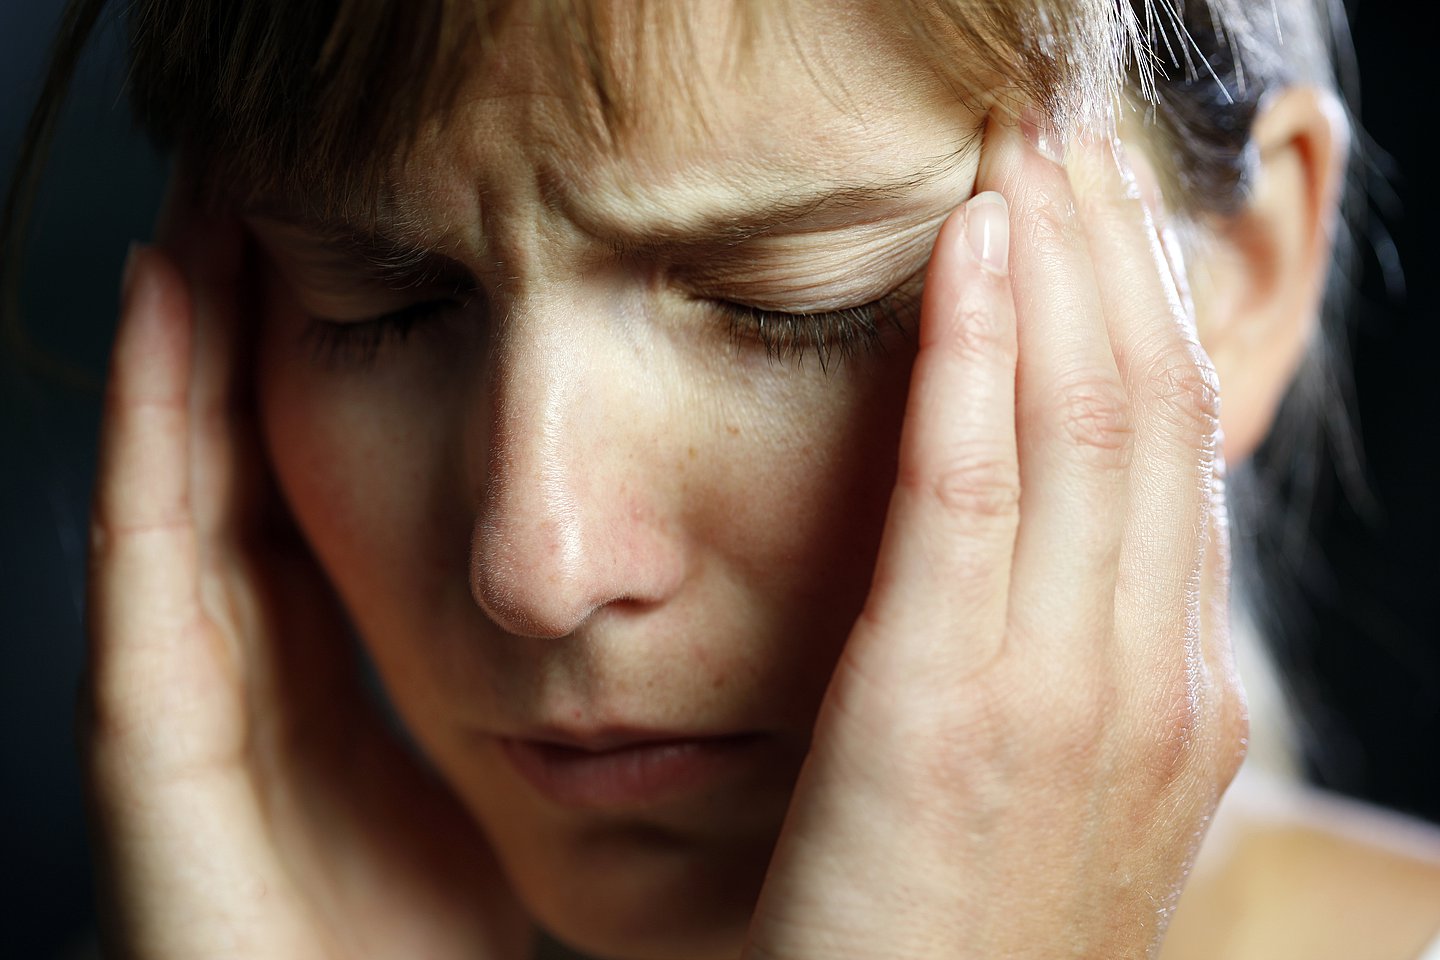 Foto: Eine junge Frau fasst sich an den Kopf. Sie leidet unter Kopfschmerzen.